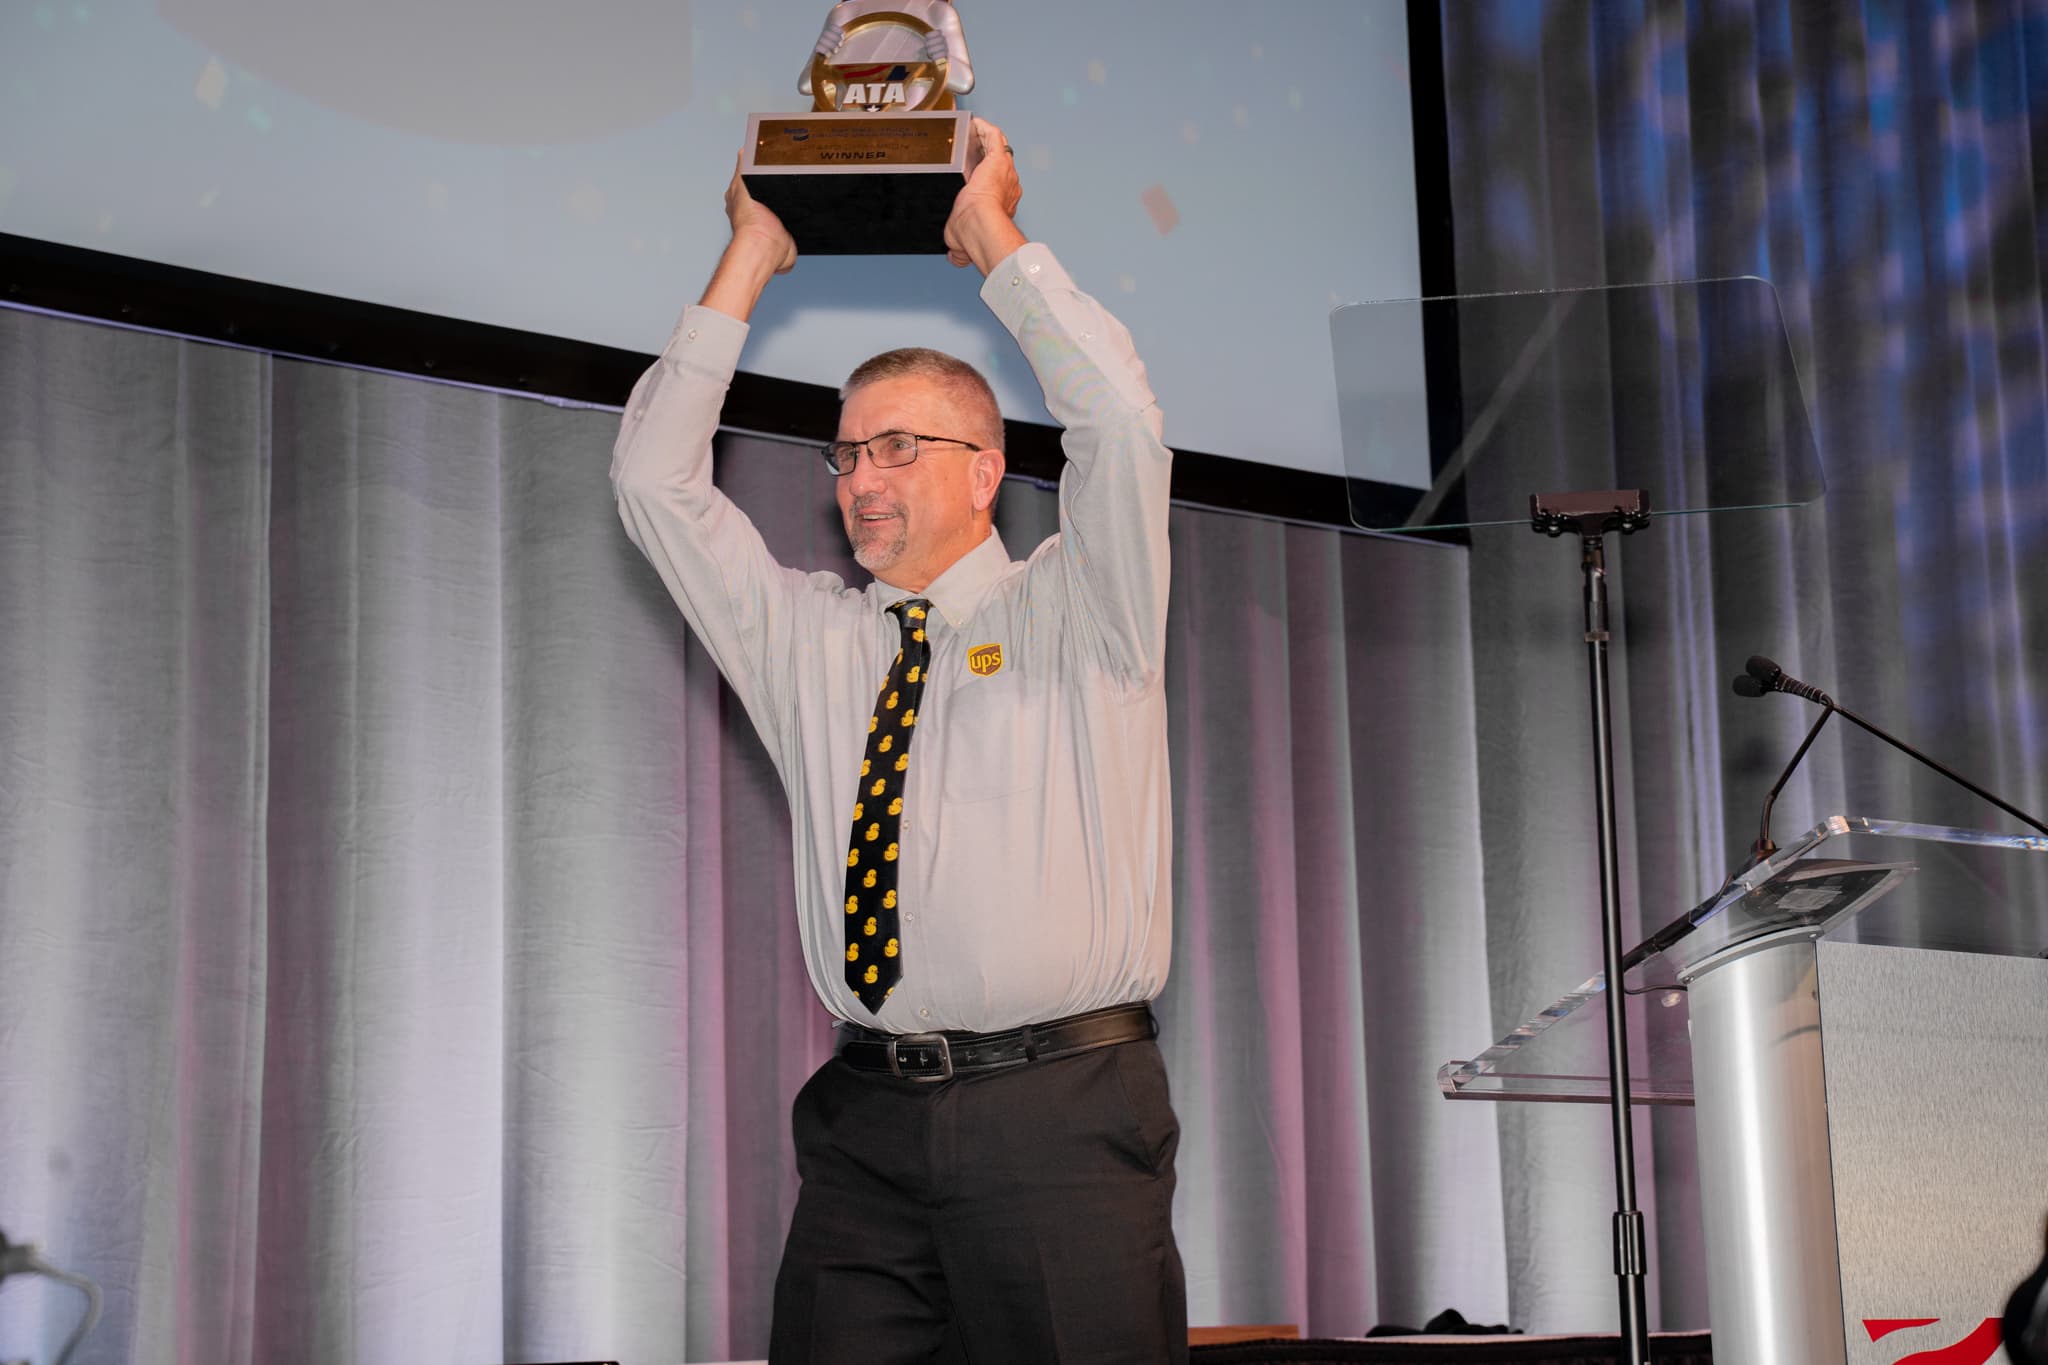 UPS Driver James "Gragg" Wilson won this year's Bendix Grand Champion award